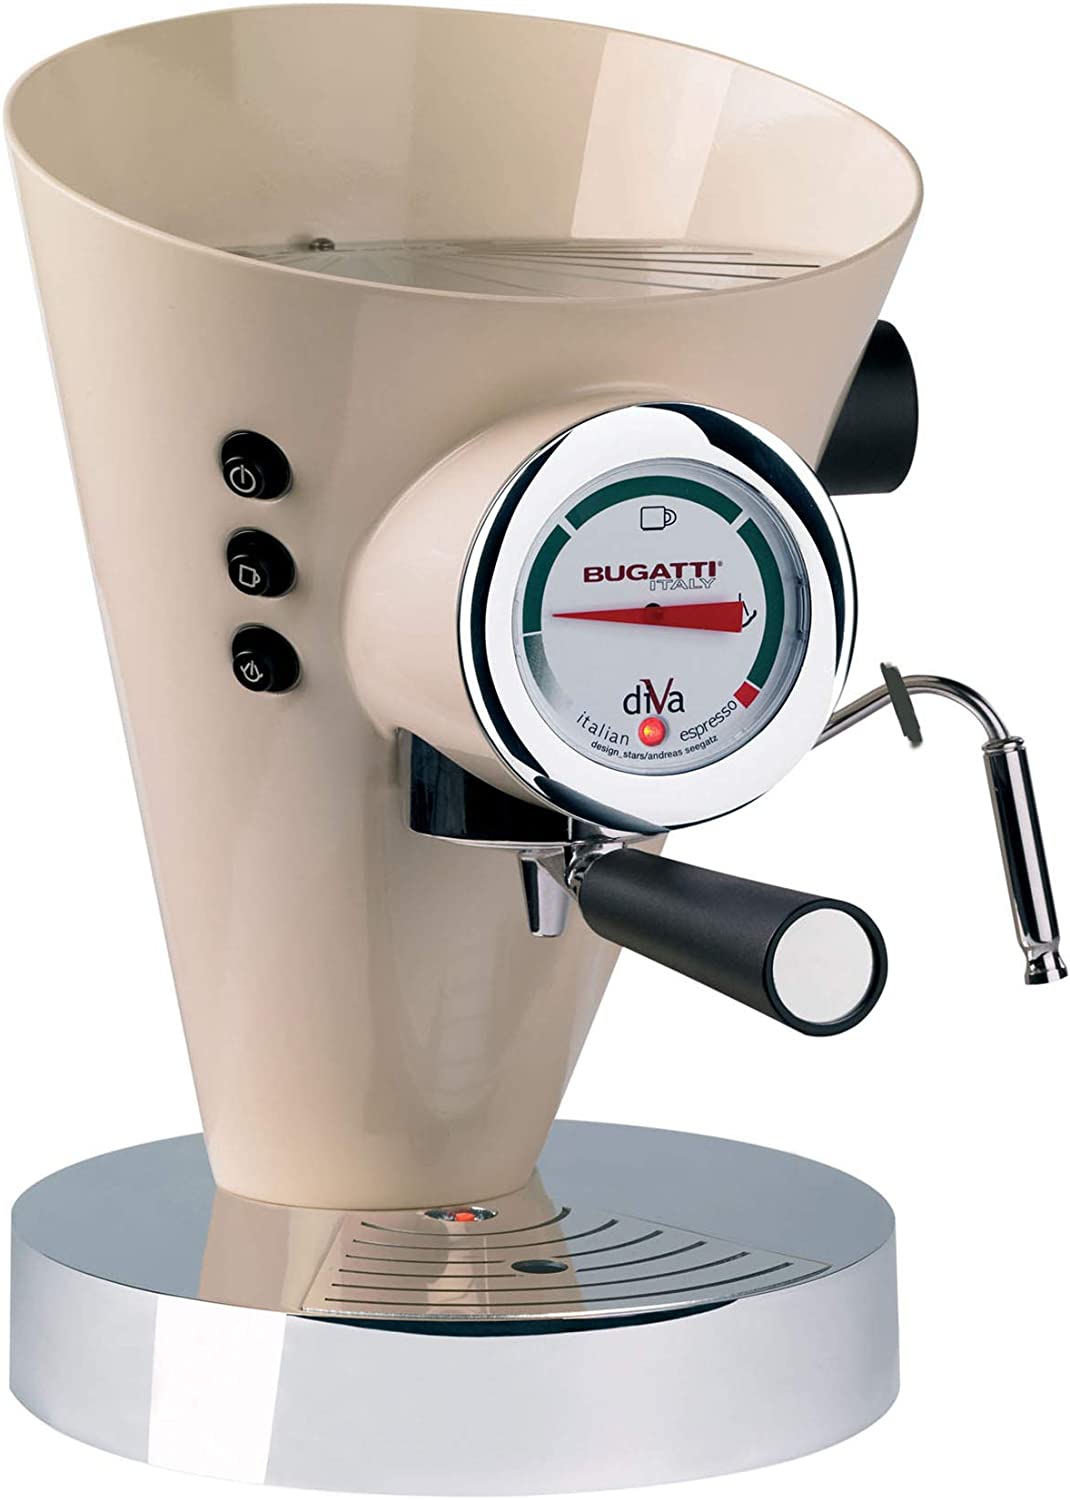 BUGATTI, Diva Espresso Coffee and Cappuccino Machine for Ground Coffee and Pads, 15 Bar, 950 W, Capacity 0.8 Litres, Elegant Design, Cream Colours